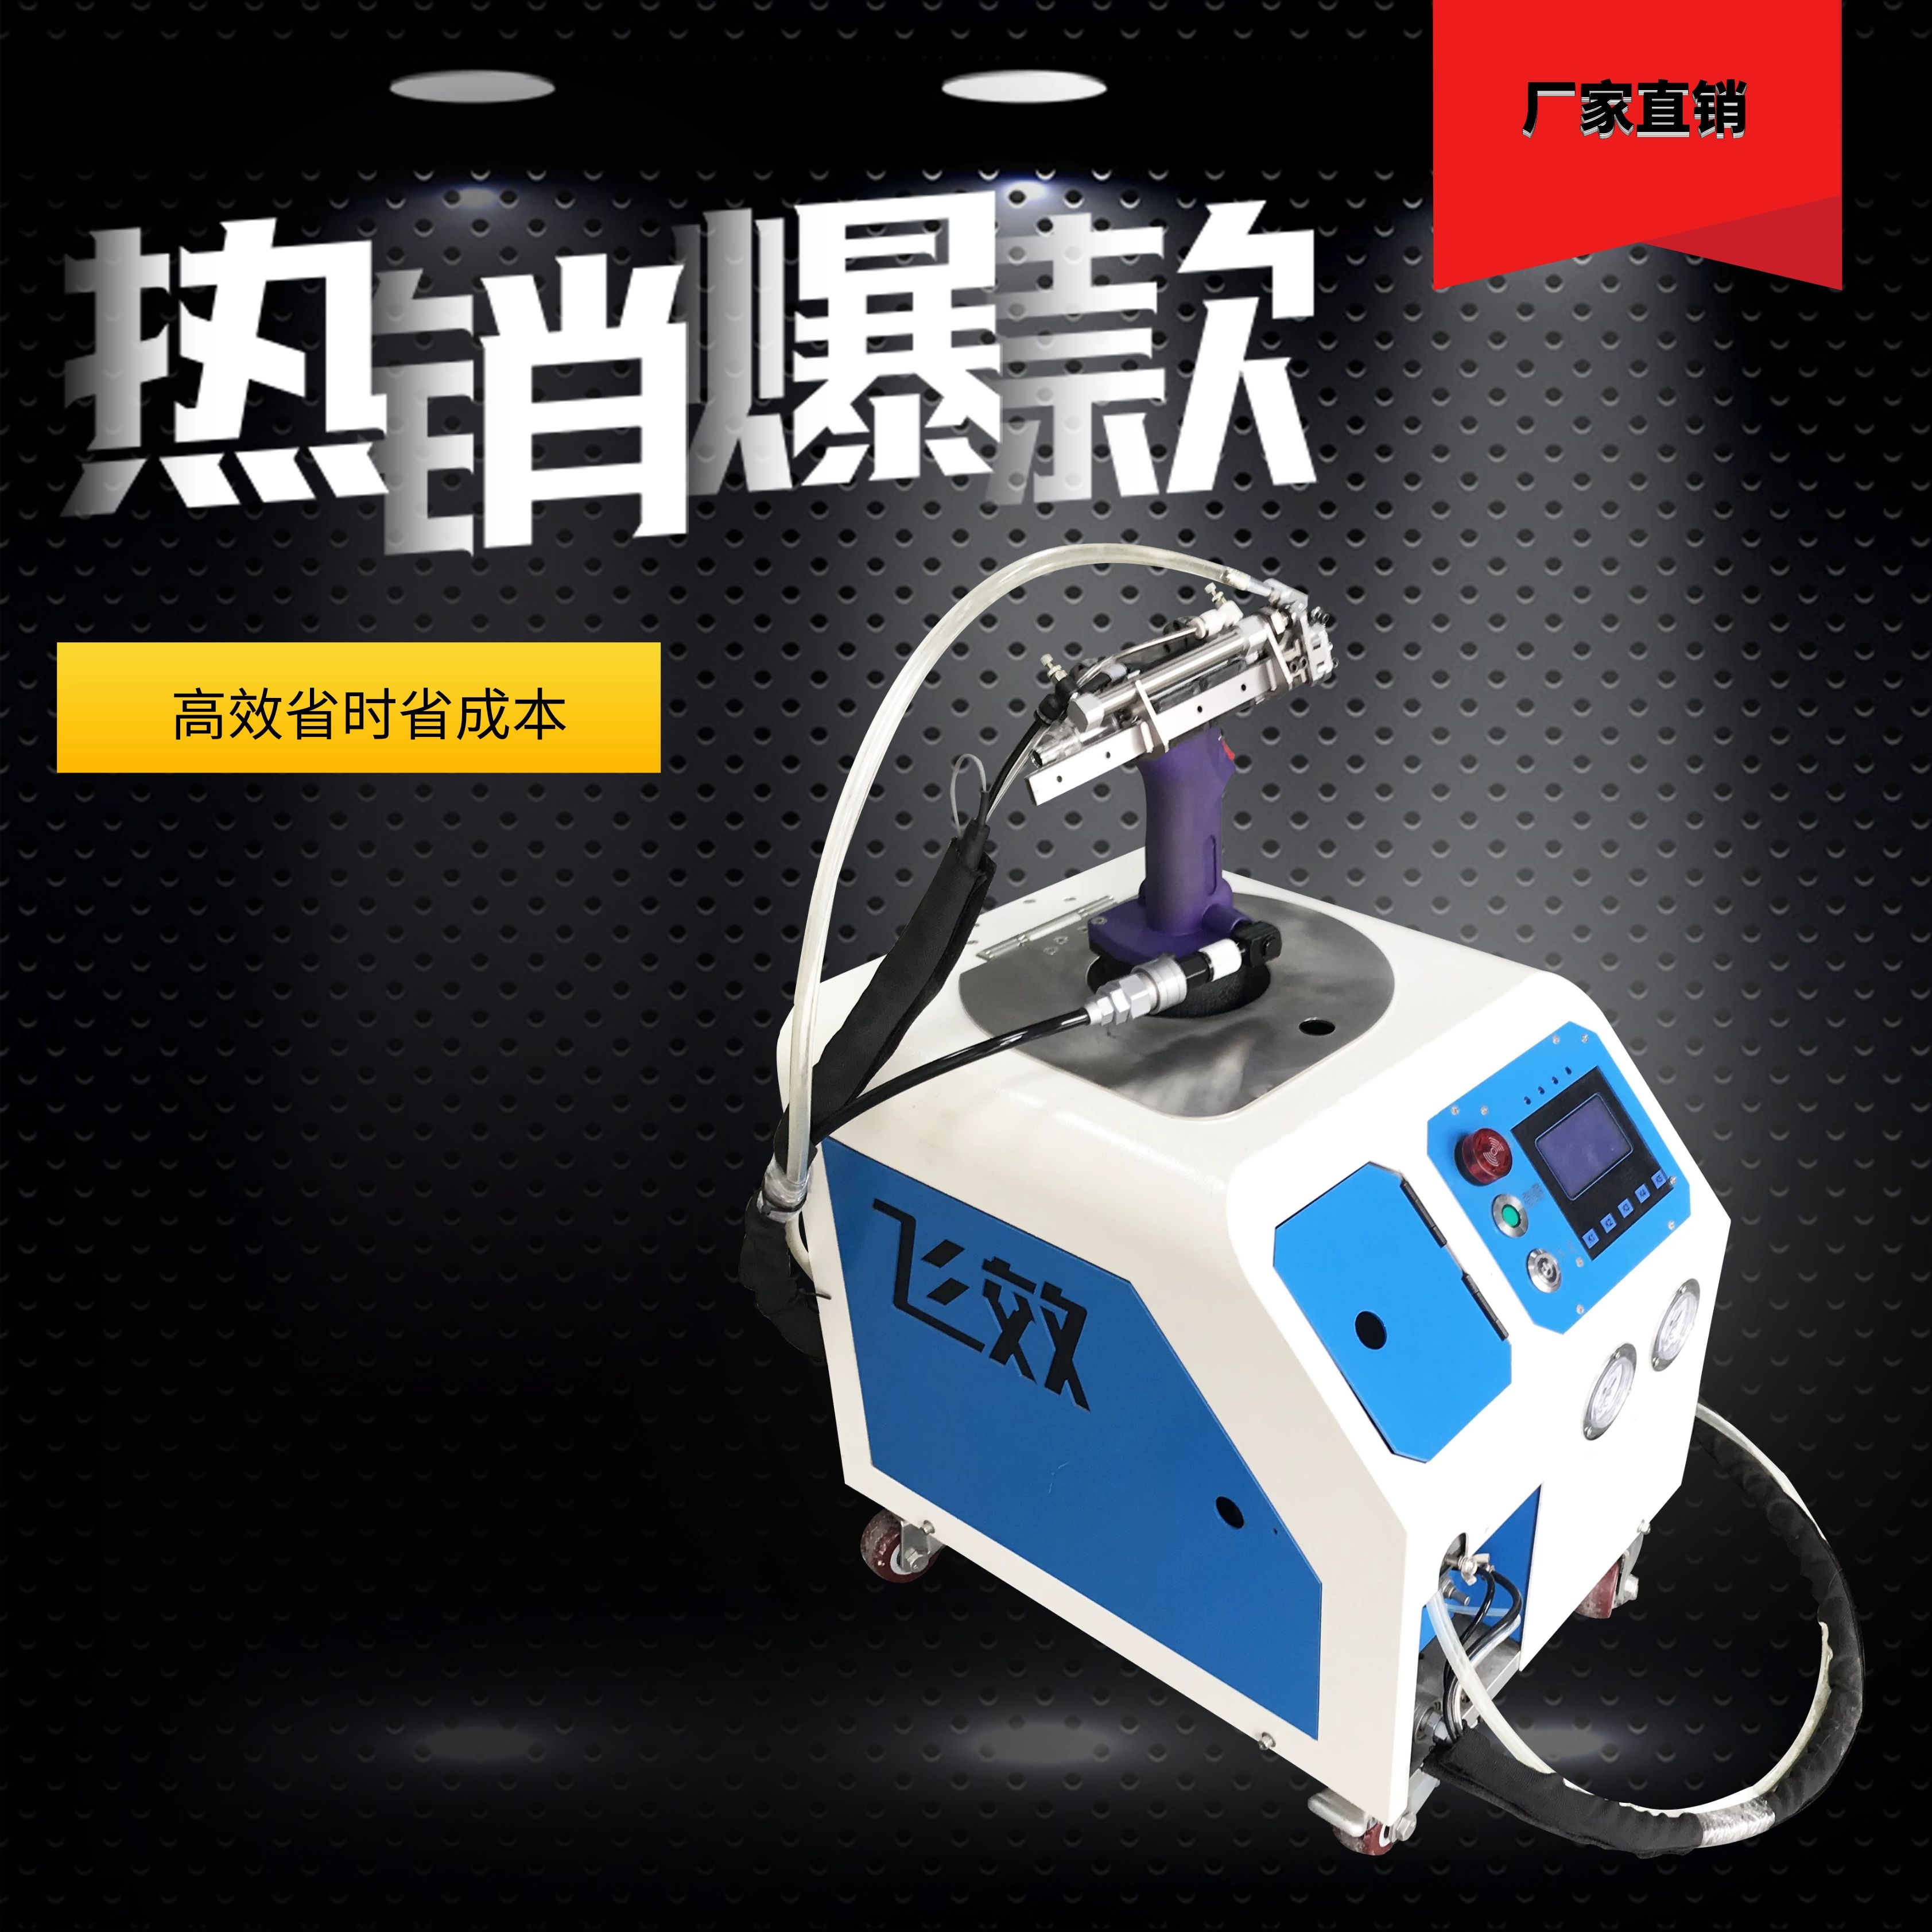 广州自动抽芯拉钉机多少钱-东莞市飞效智能科技有限公司